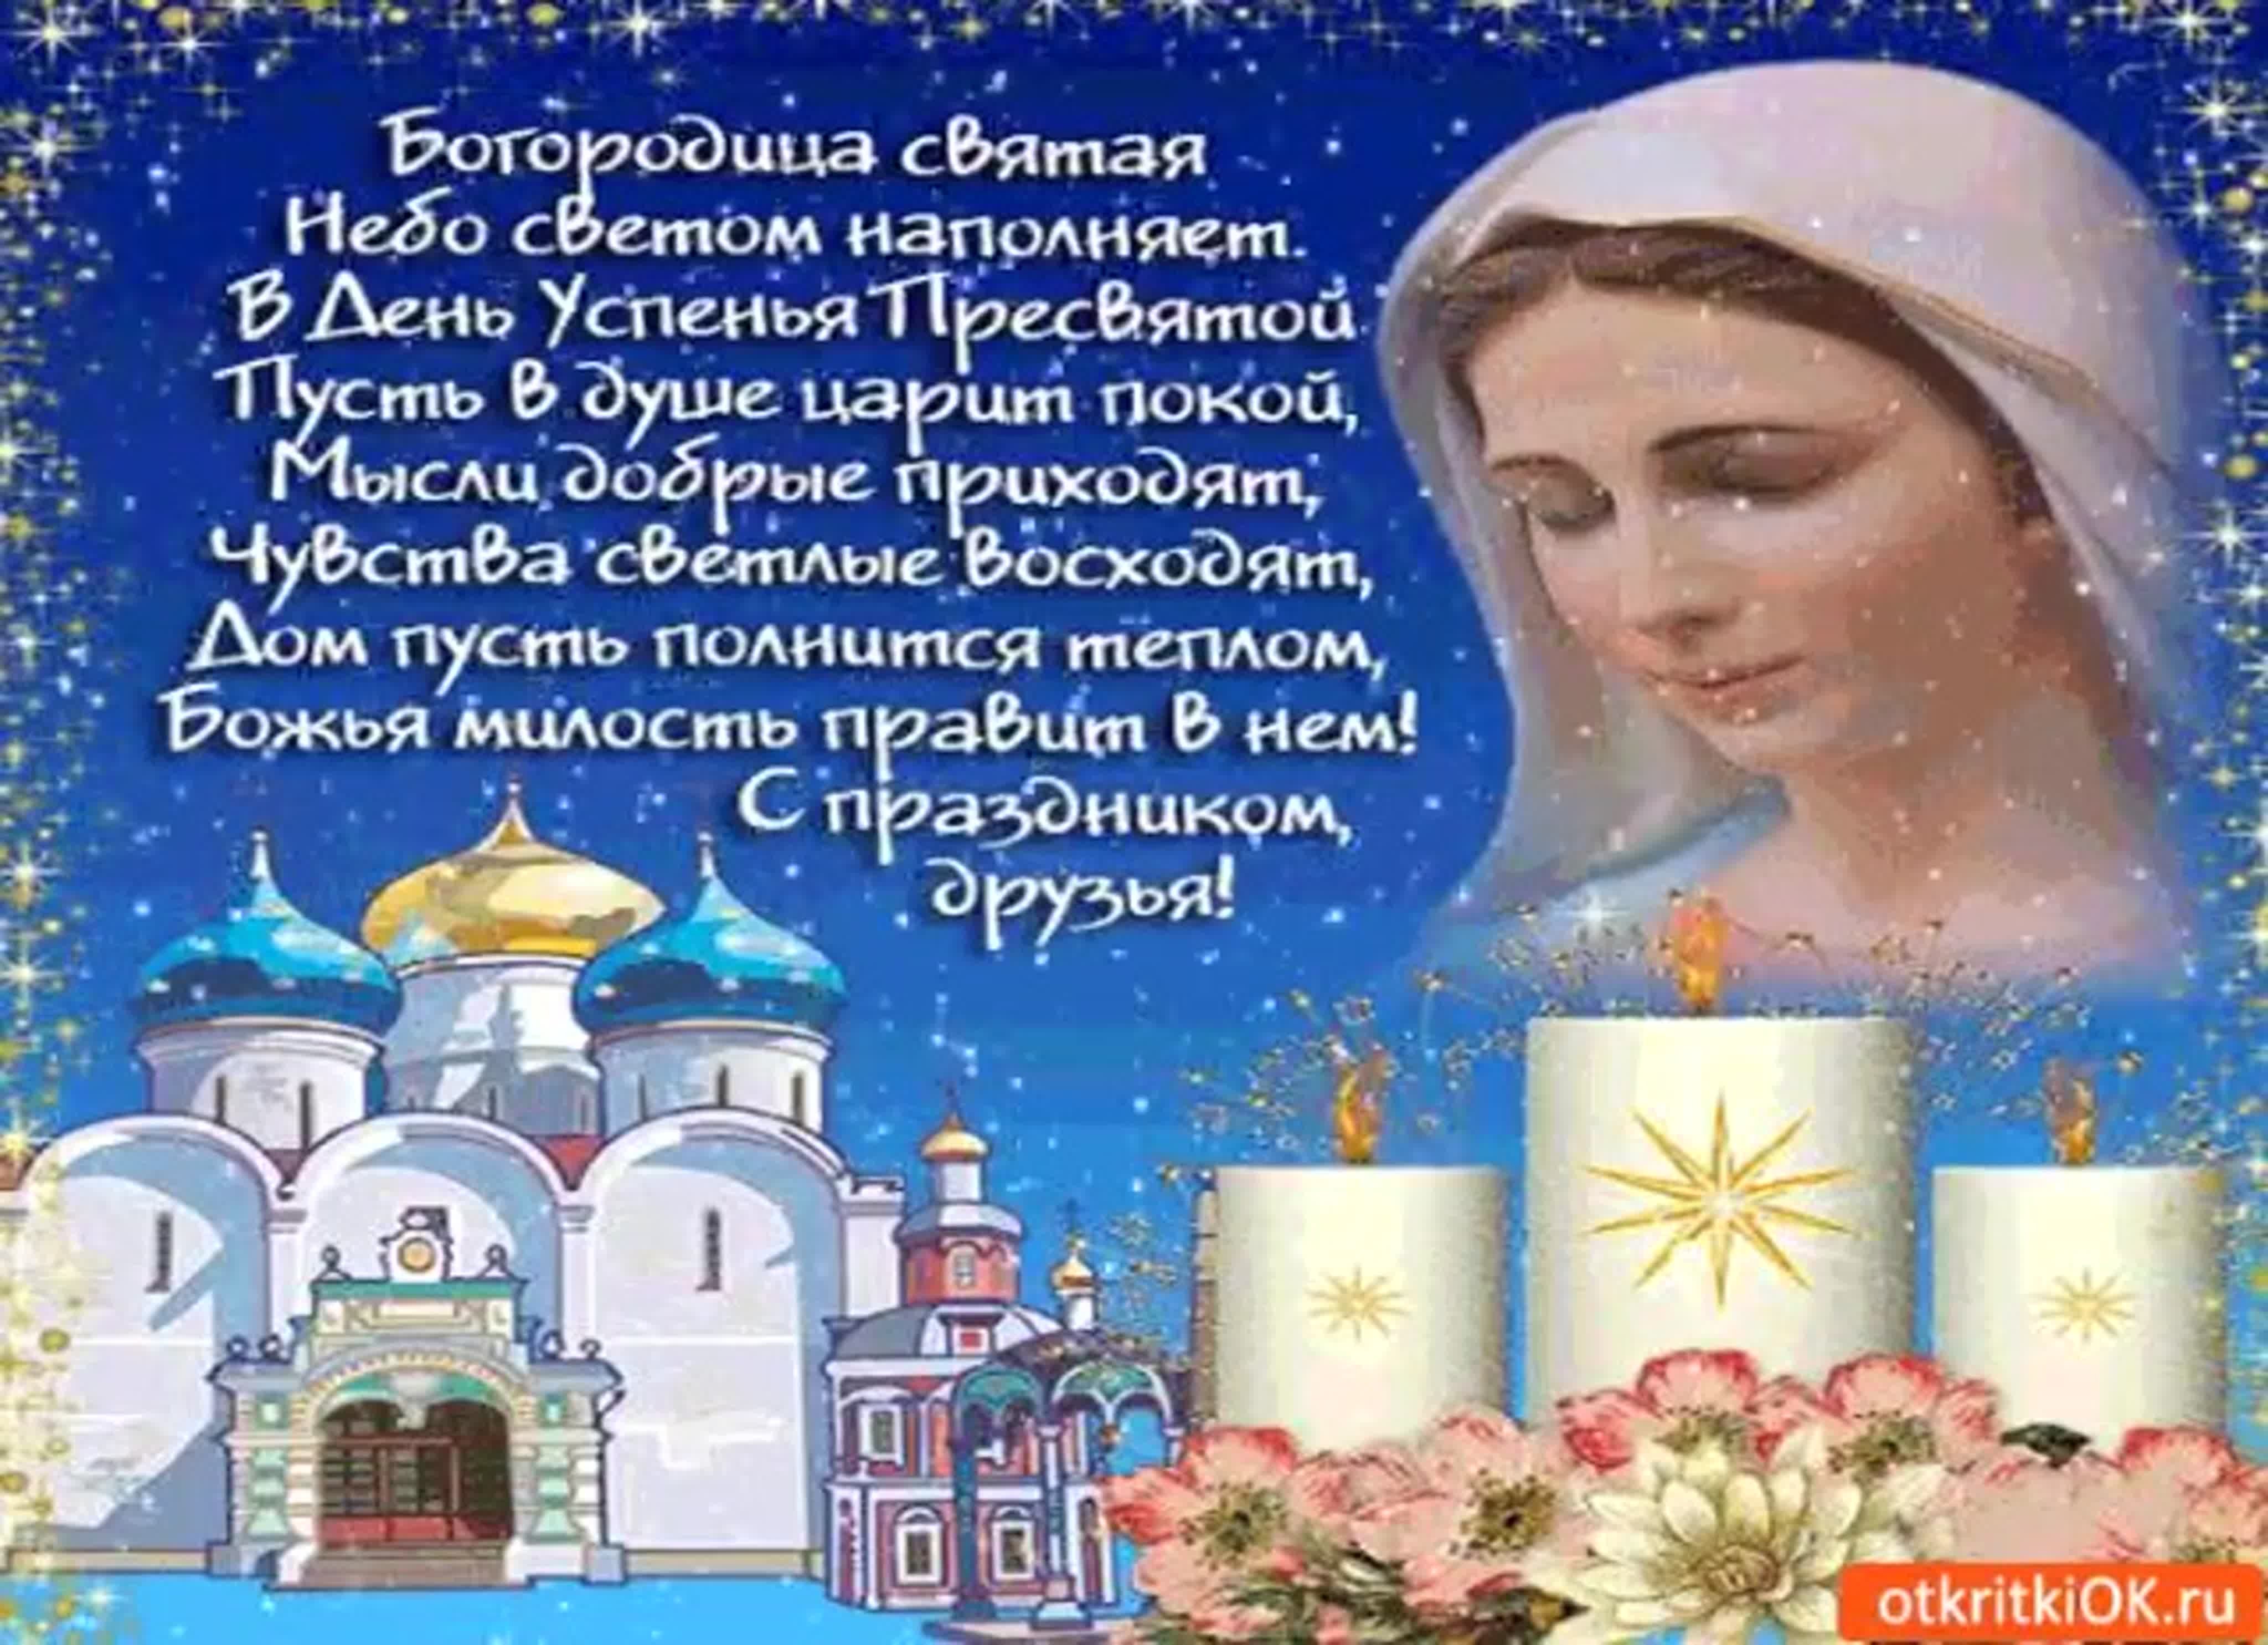 Святая богородица праздник